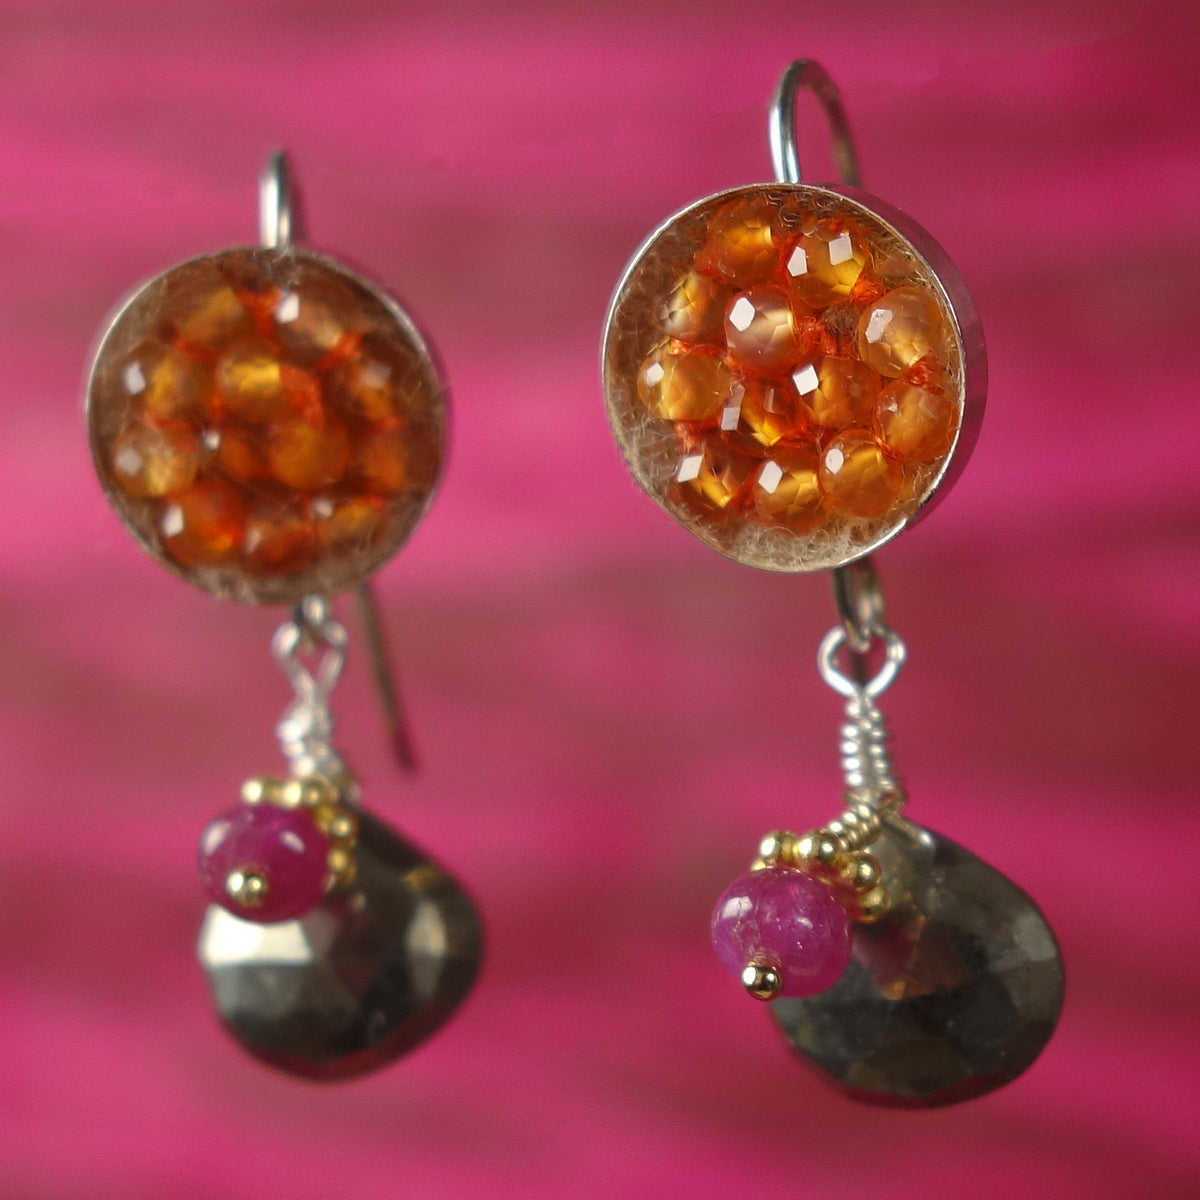 Sunshine on a Rainy Day: carnelian, ruby, pyrite earrings